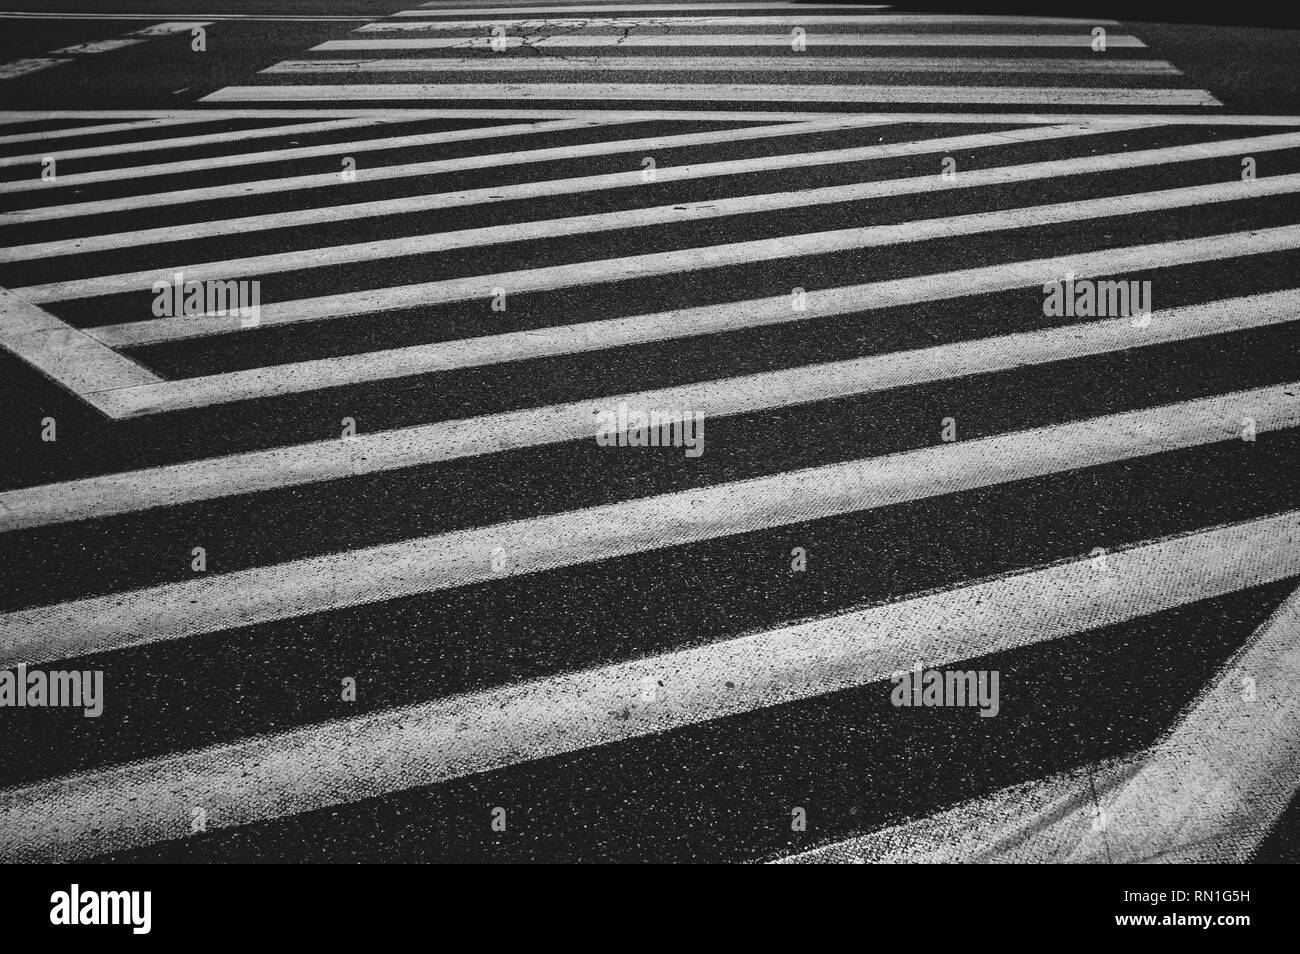 Lignes abstraites de passage pour piétons, noir et blanc Banque D'Images